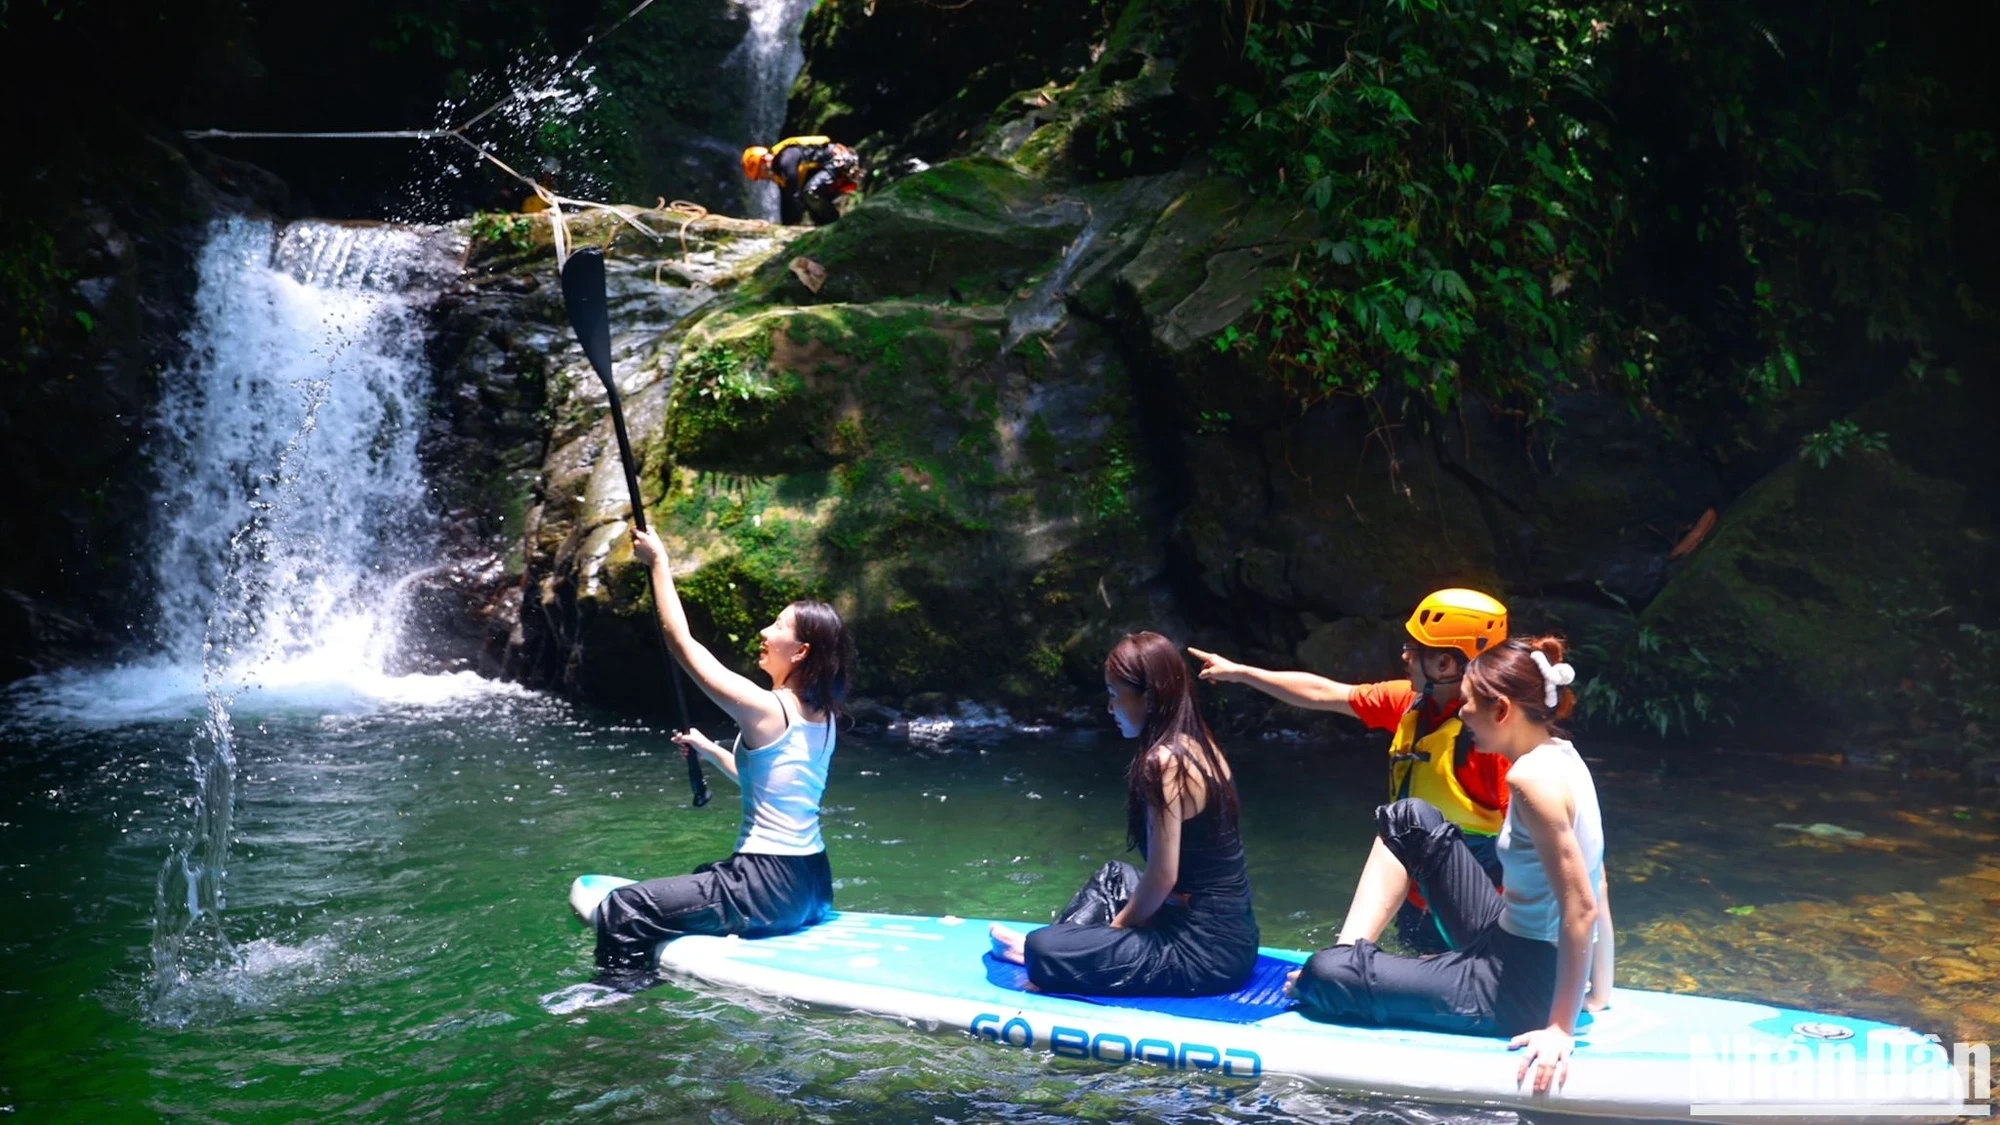 Tại thác 3 (cao 3 mét), du khách có thể bơi lội nhẹ nhàng thư giãn, chèo SUP, nghỉ ngơi, chụp hình, ăn nhẹ để bổ sung năng lượng.